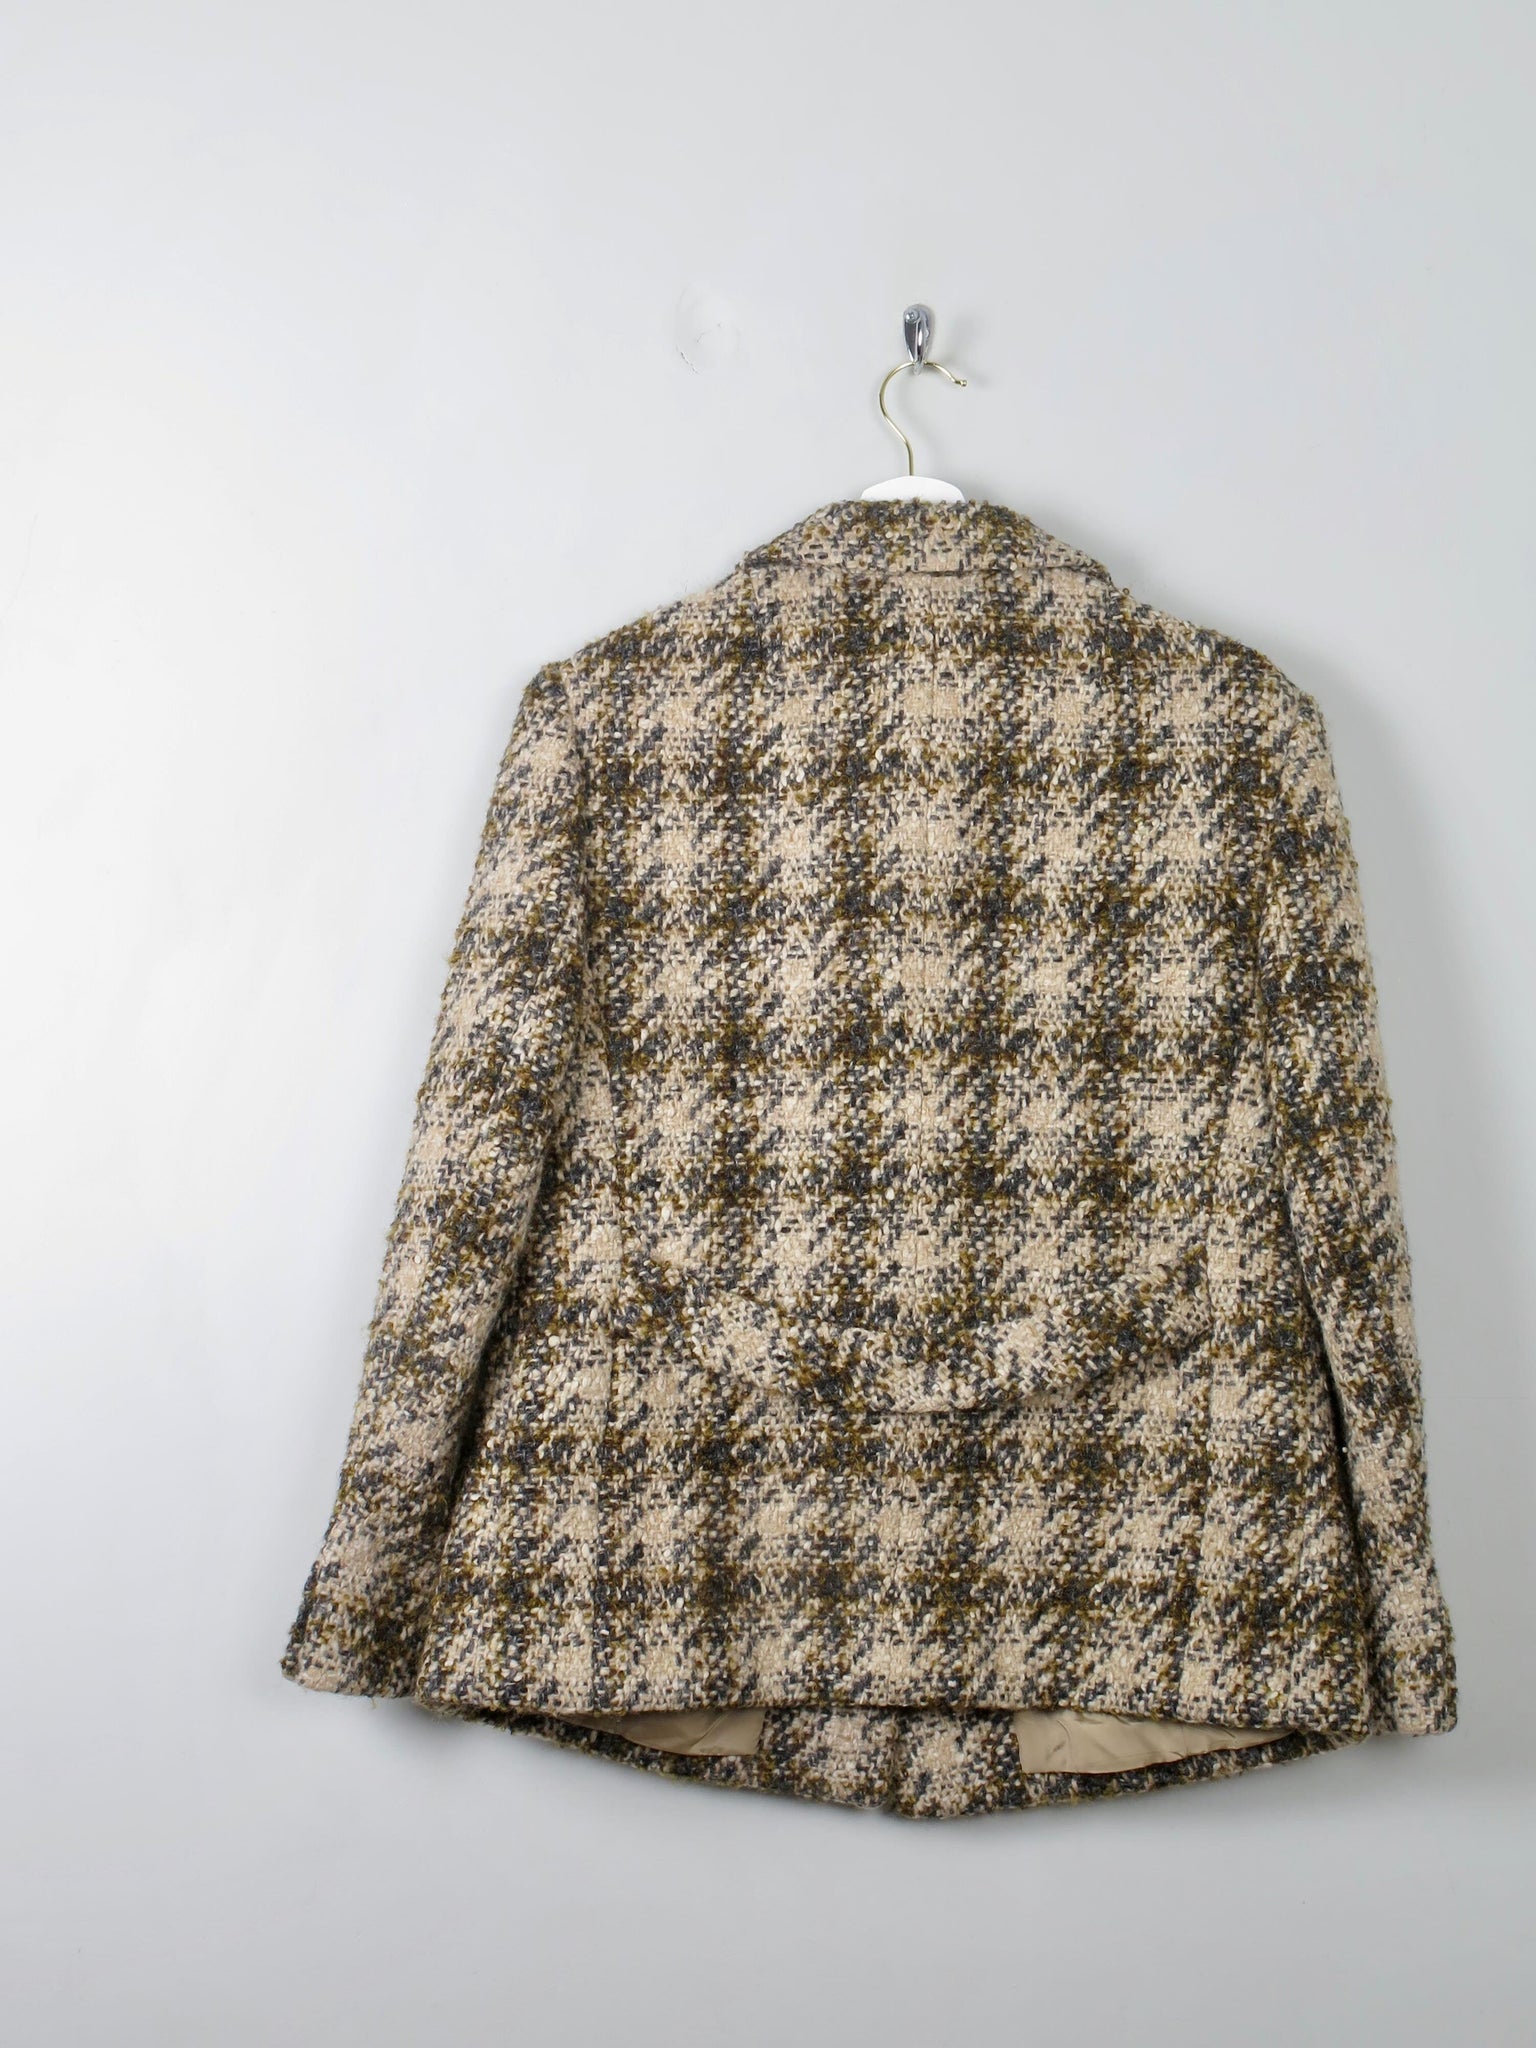 Women's Cream Vintage Tweed Jacket 1960s 12/14 - The Harlequin